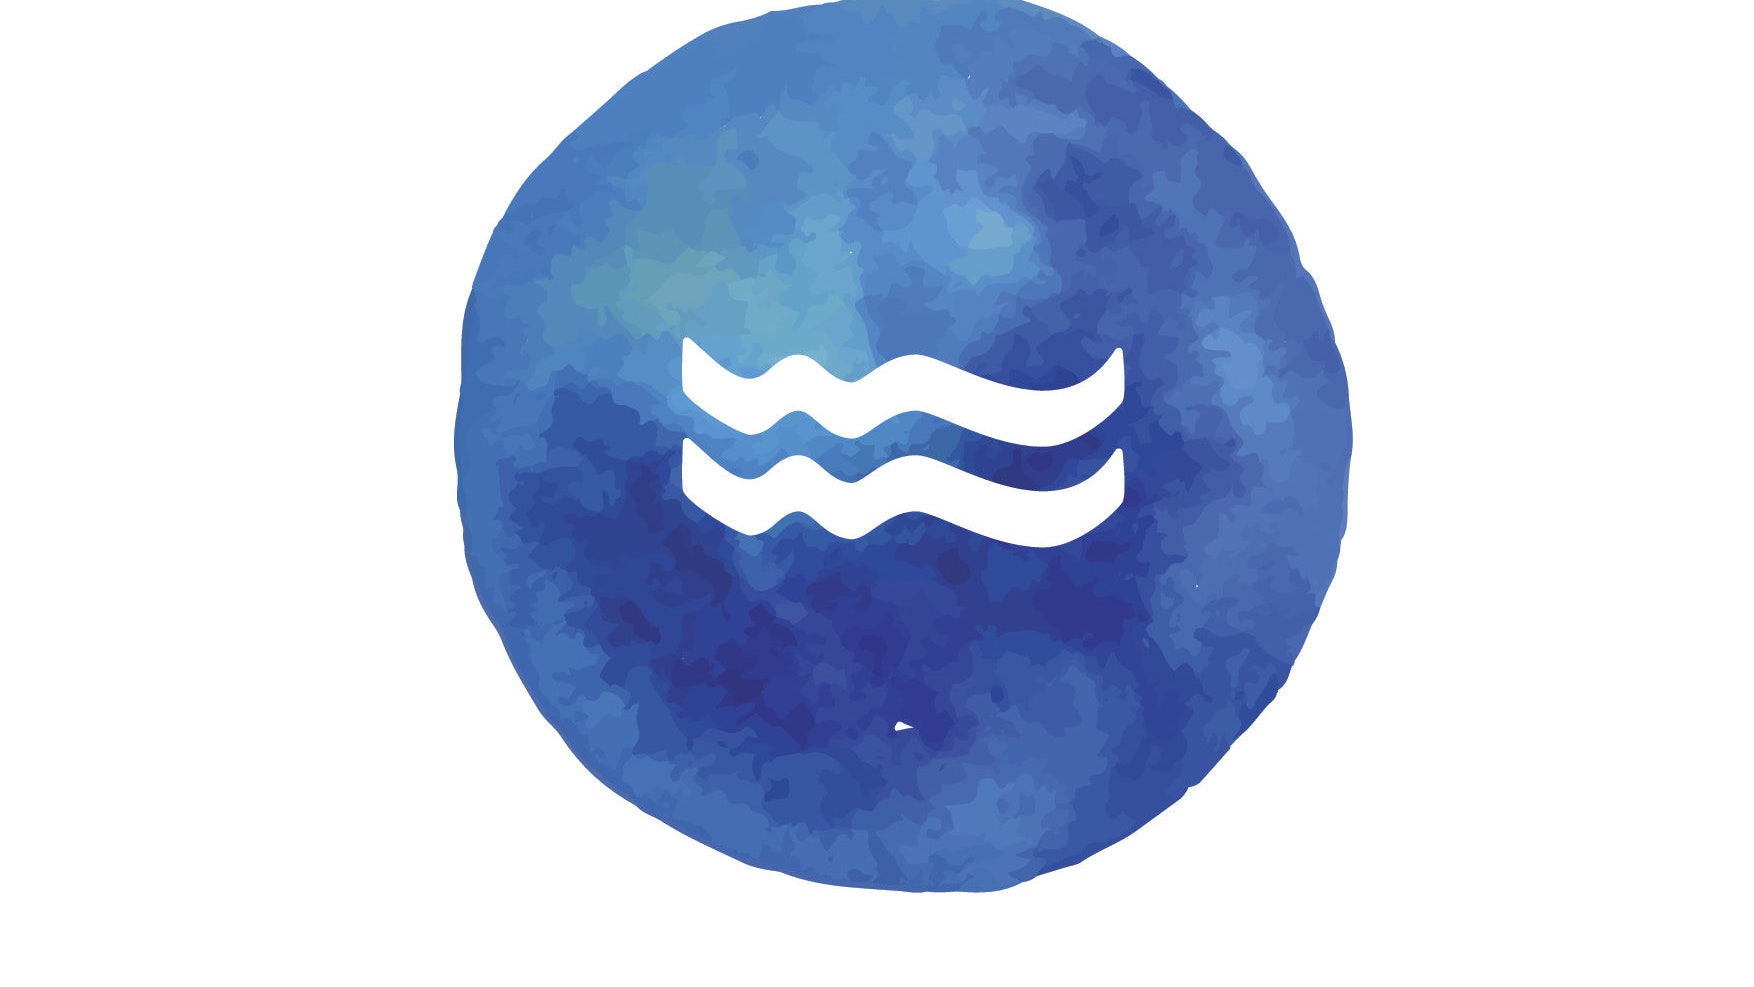 Гороскоп для Водолеев на 2019 год от астролога Анжелы Перл